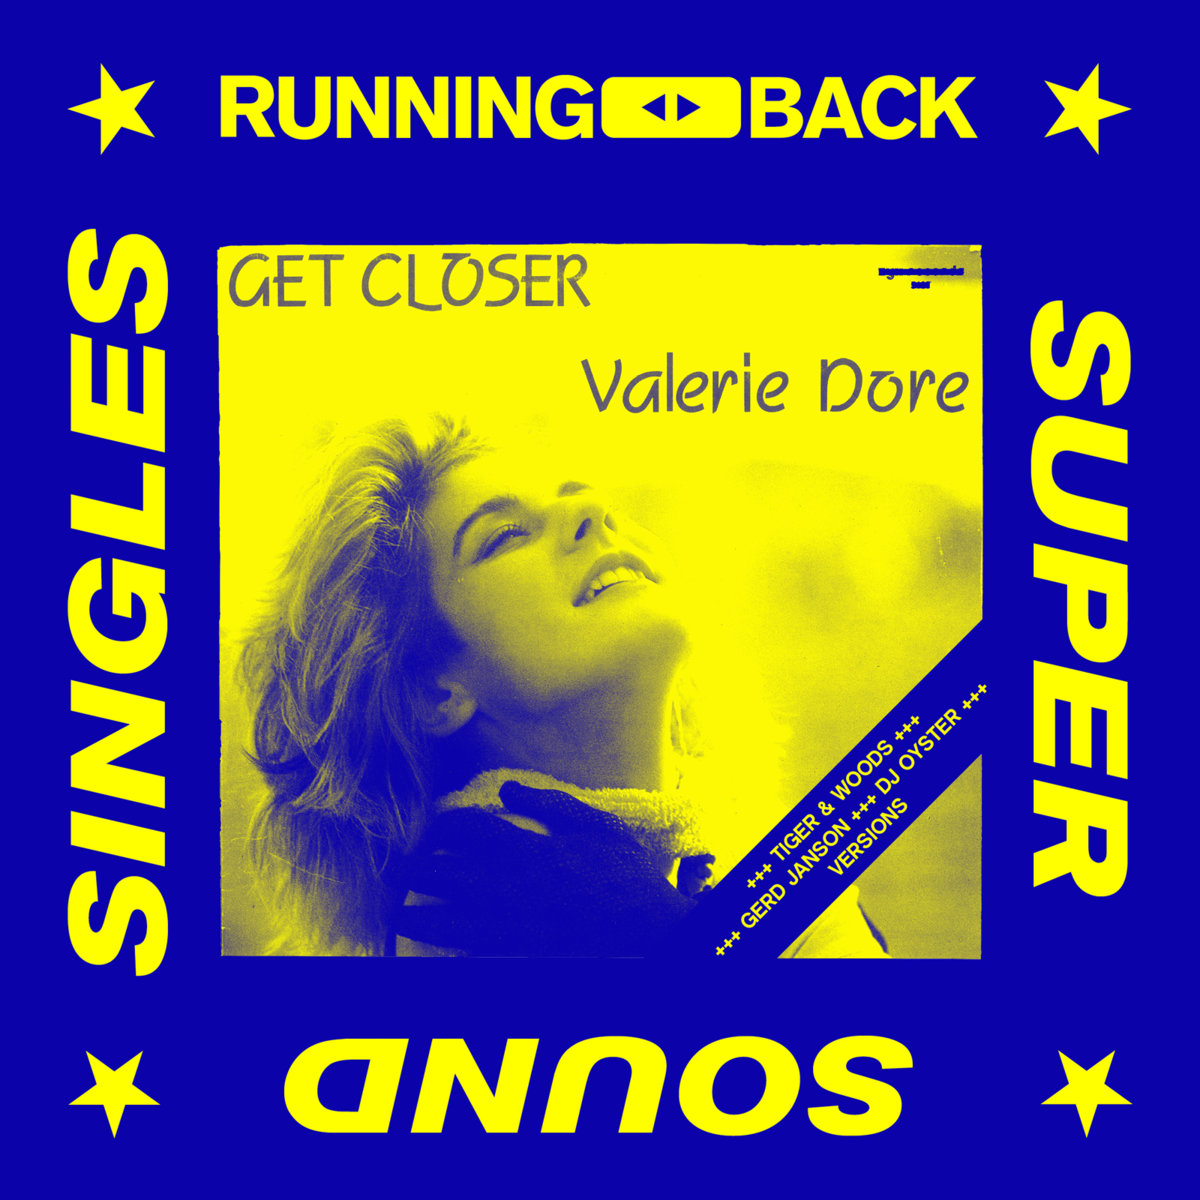 Valerie Dore - Get Closer (Remixes) / Running Back